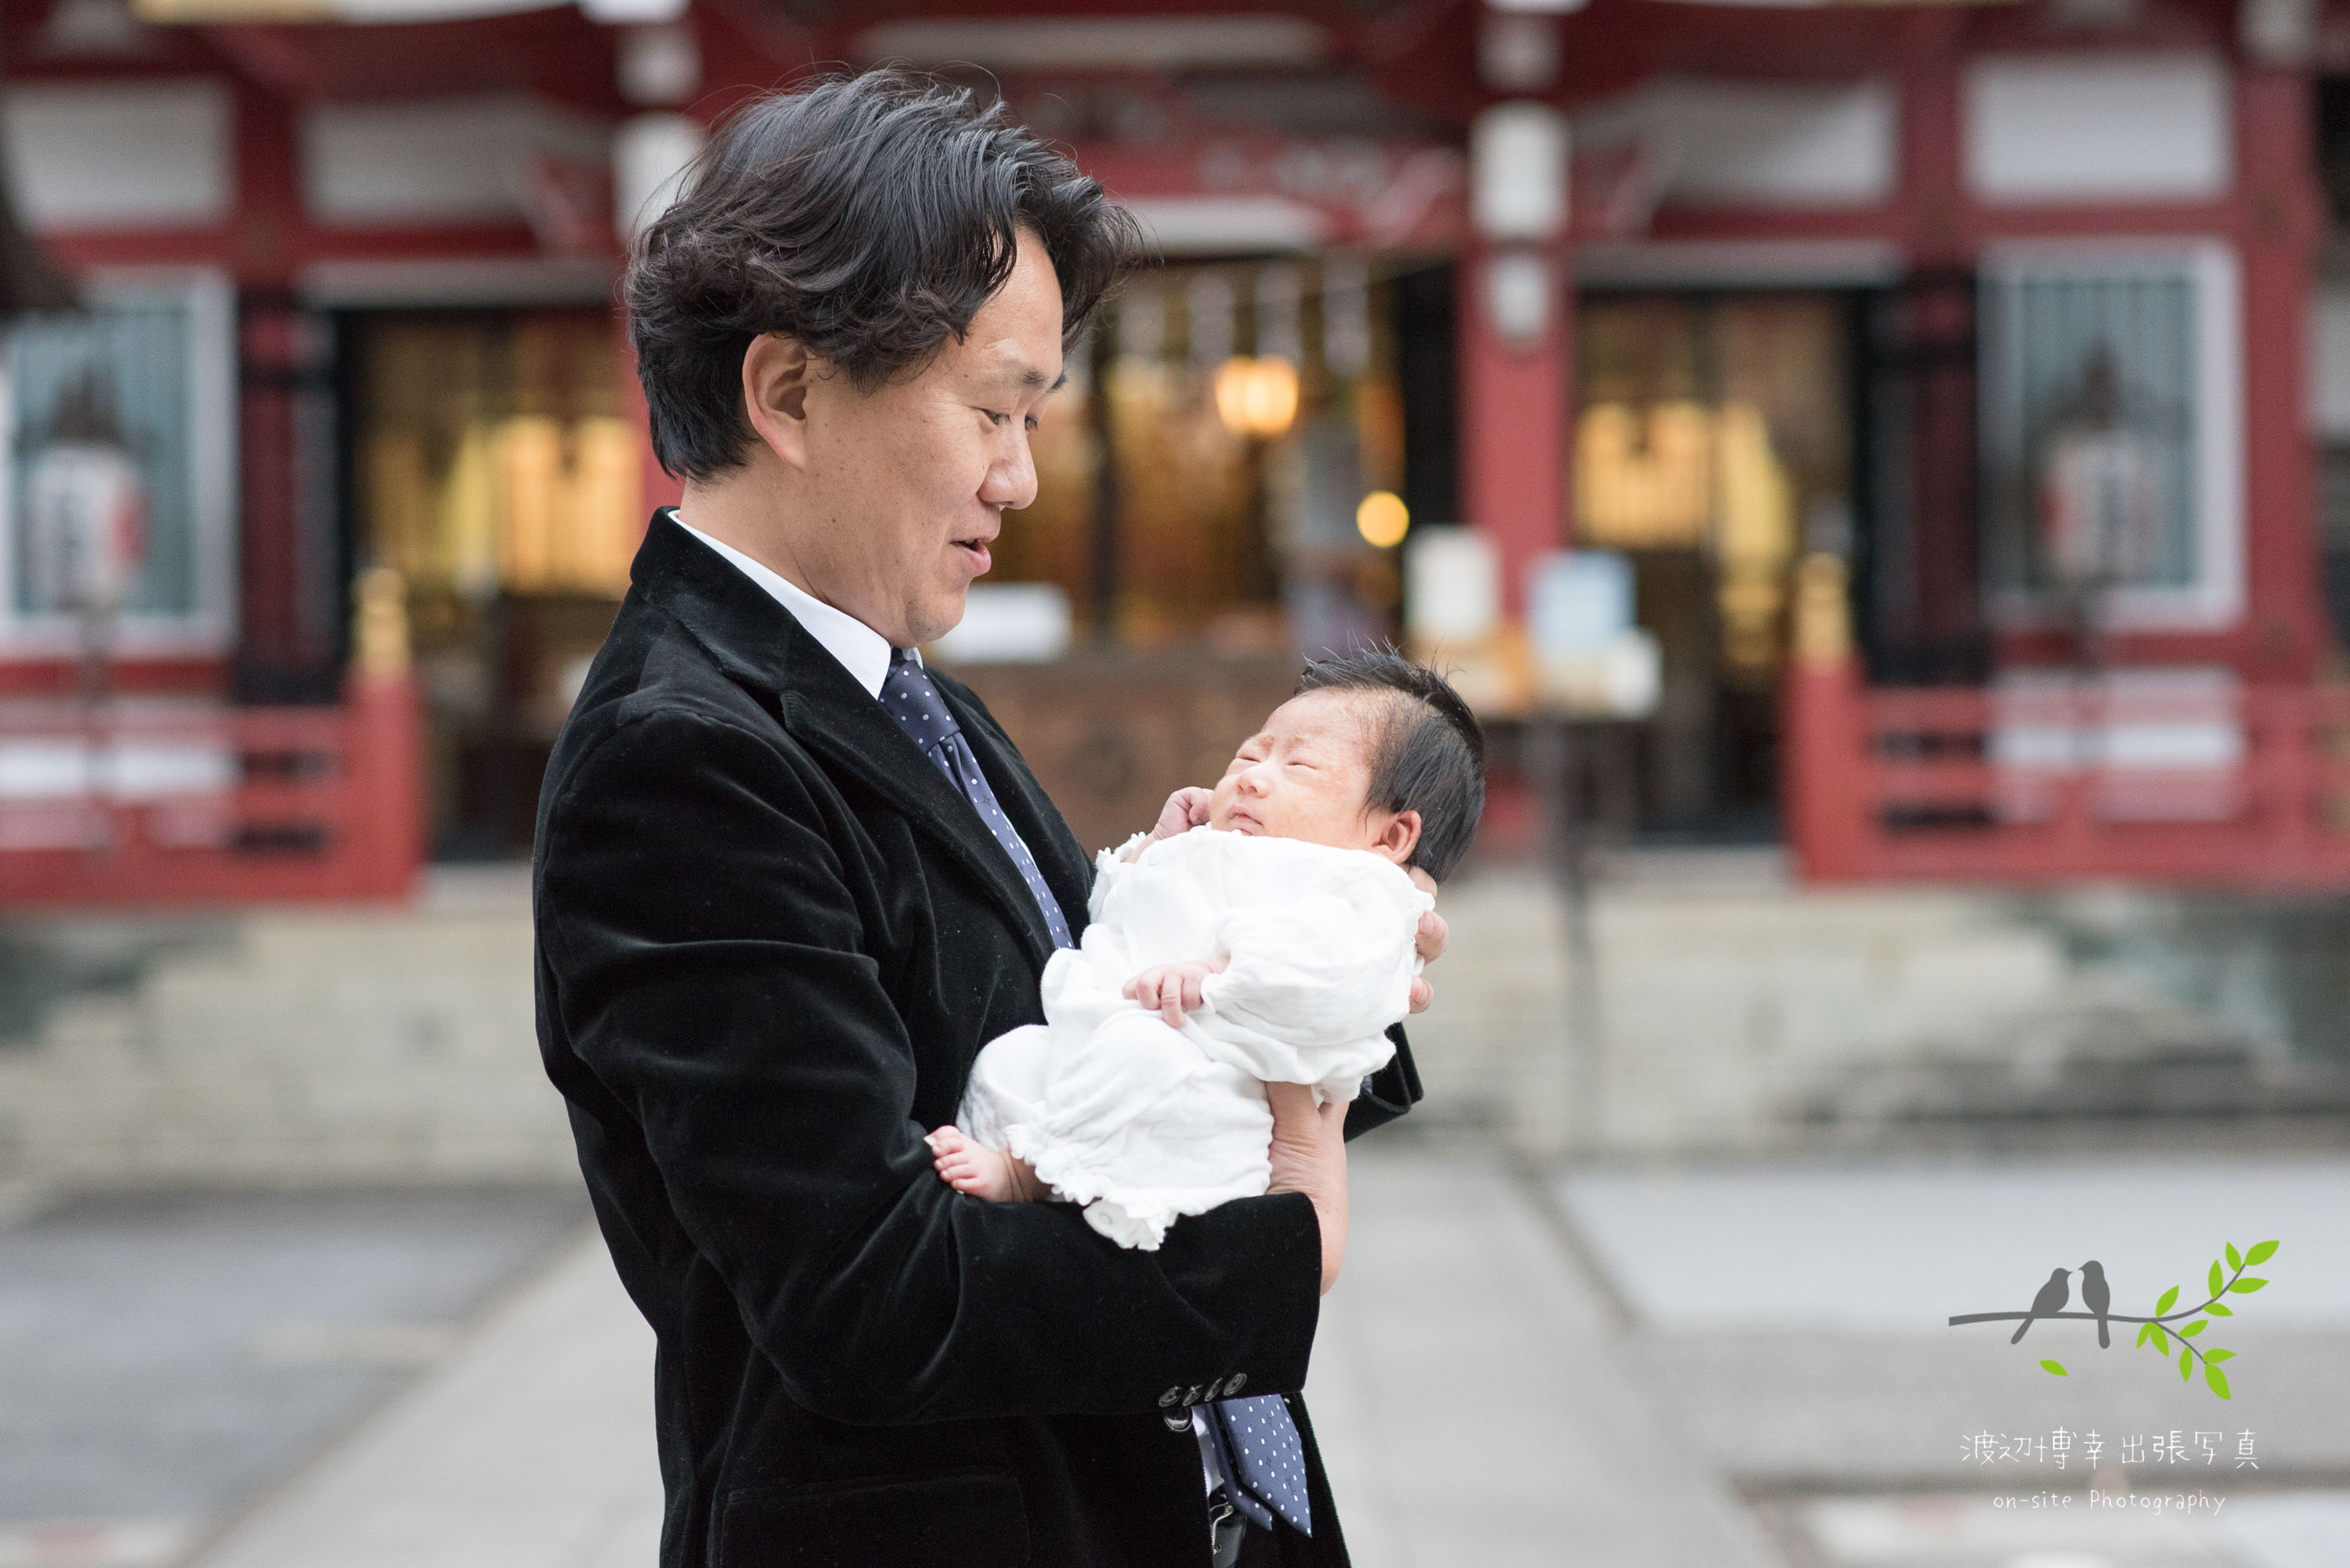 神社本殿の前で赤ちゃんを抱き立つ父親